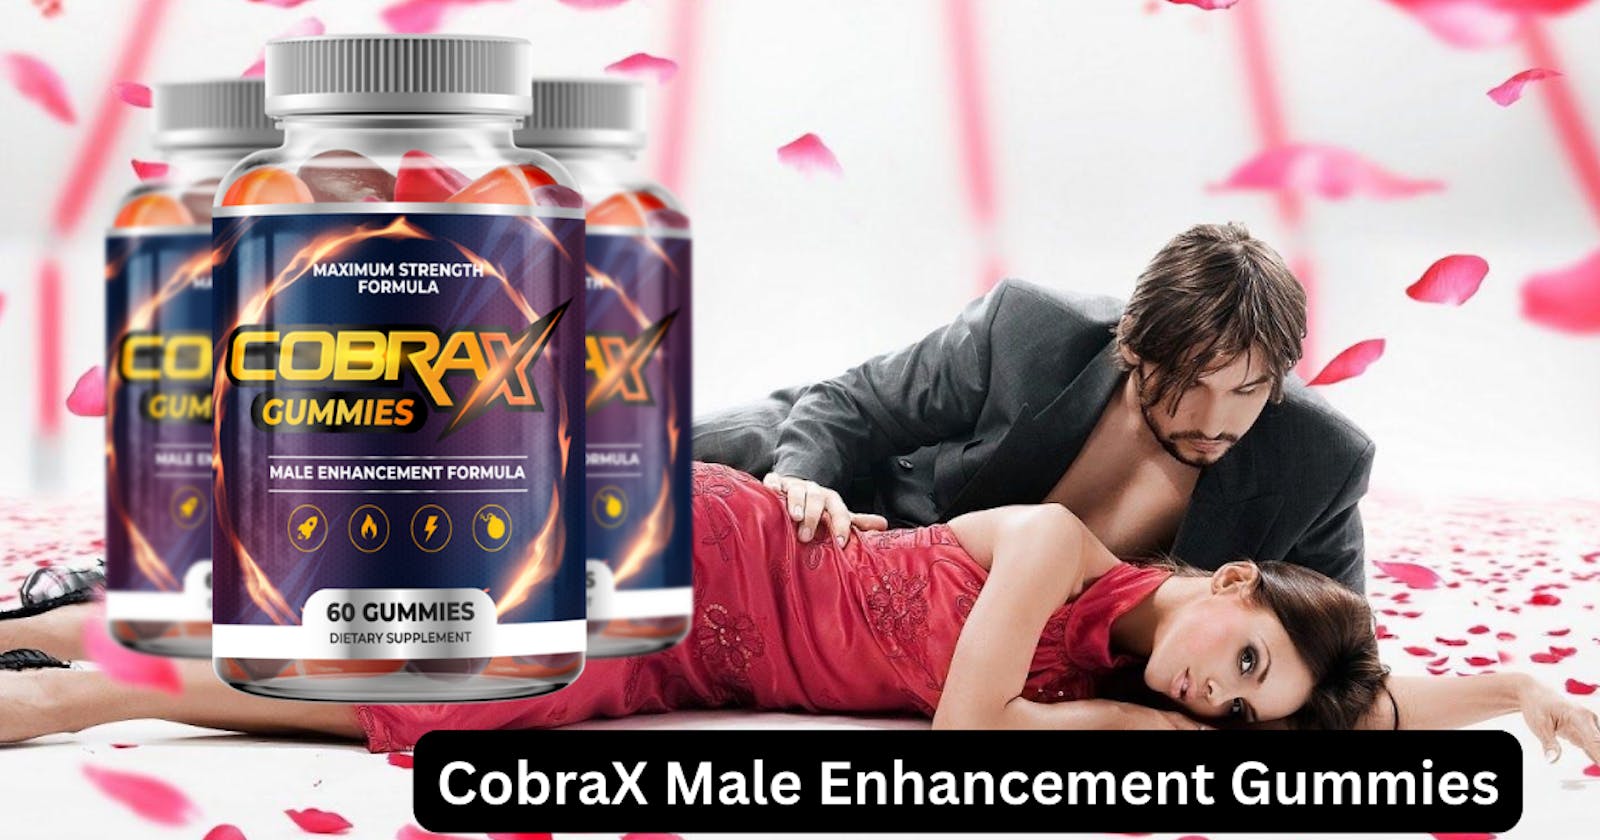 COBRAX Male Enhancement Gummies Made in Canada